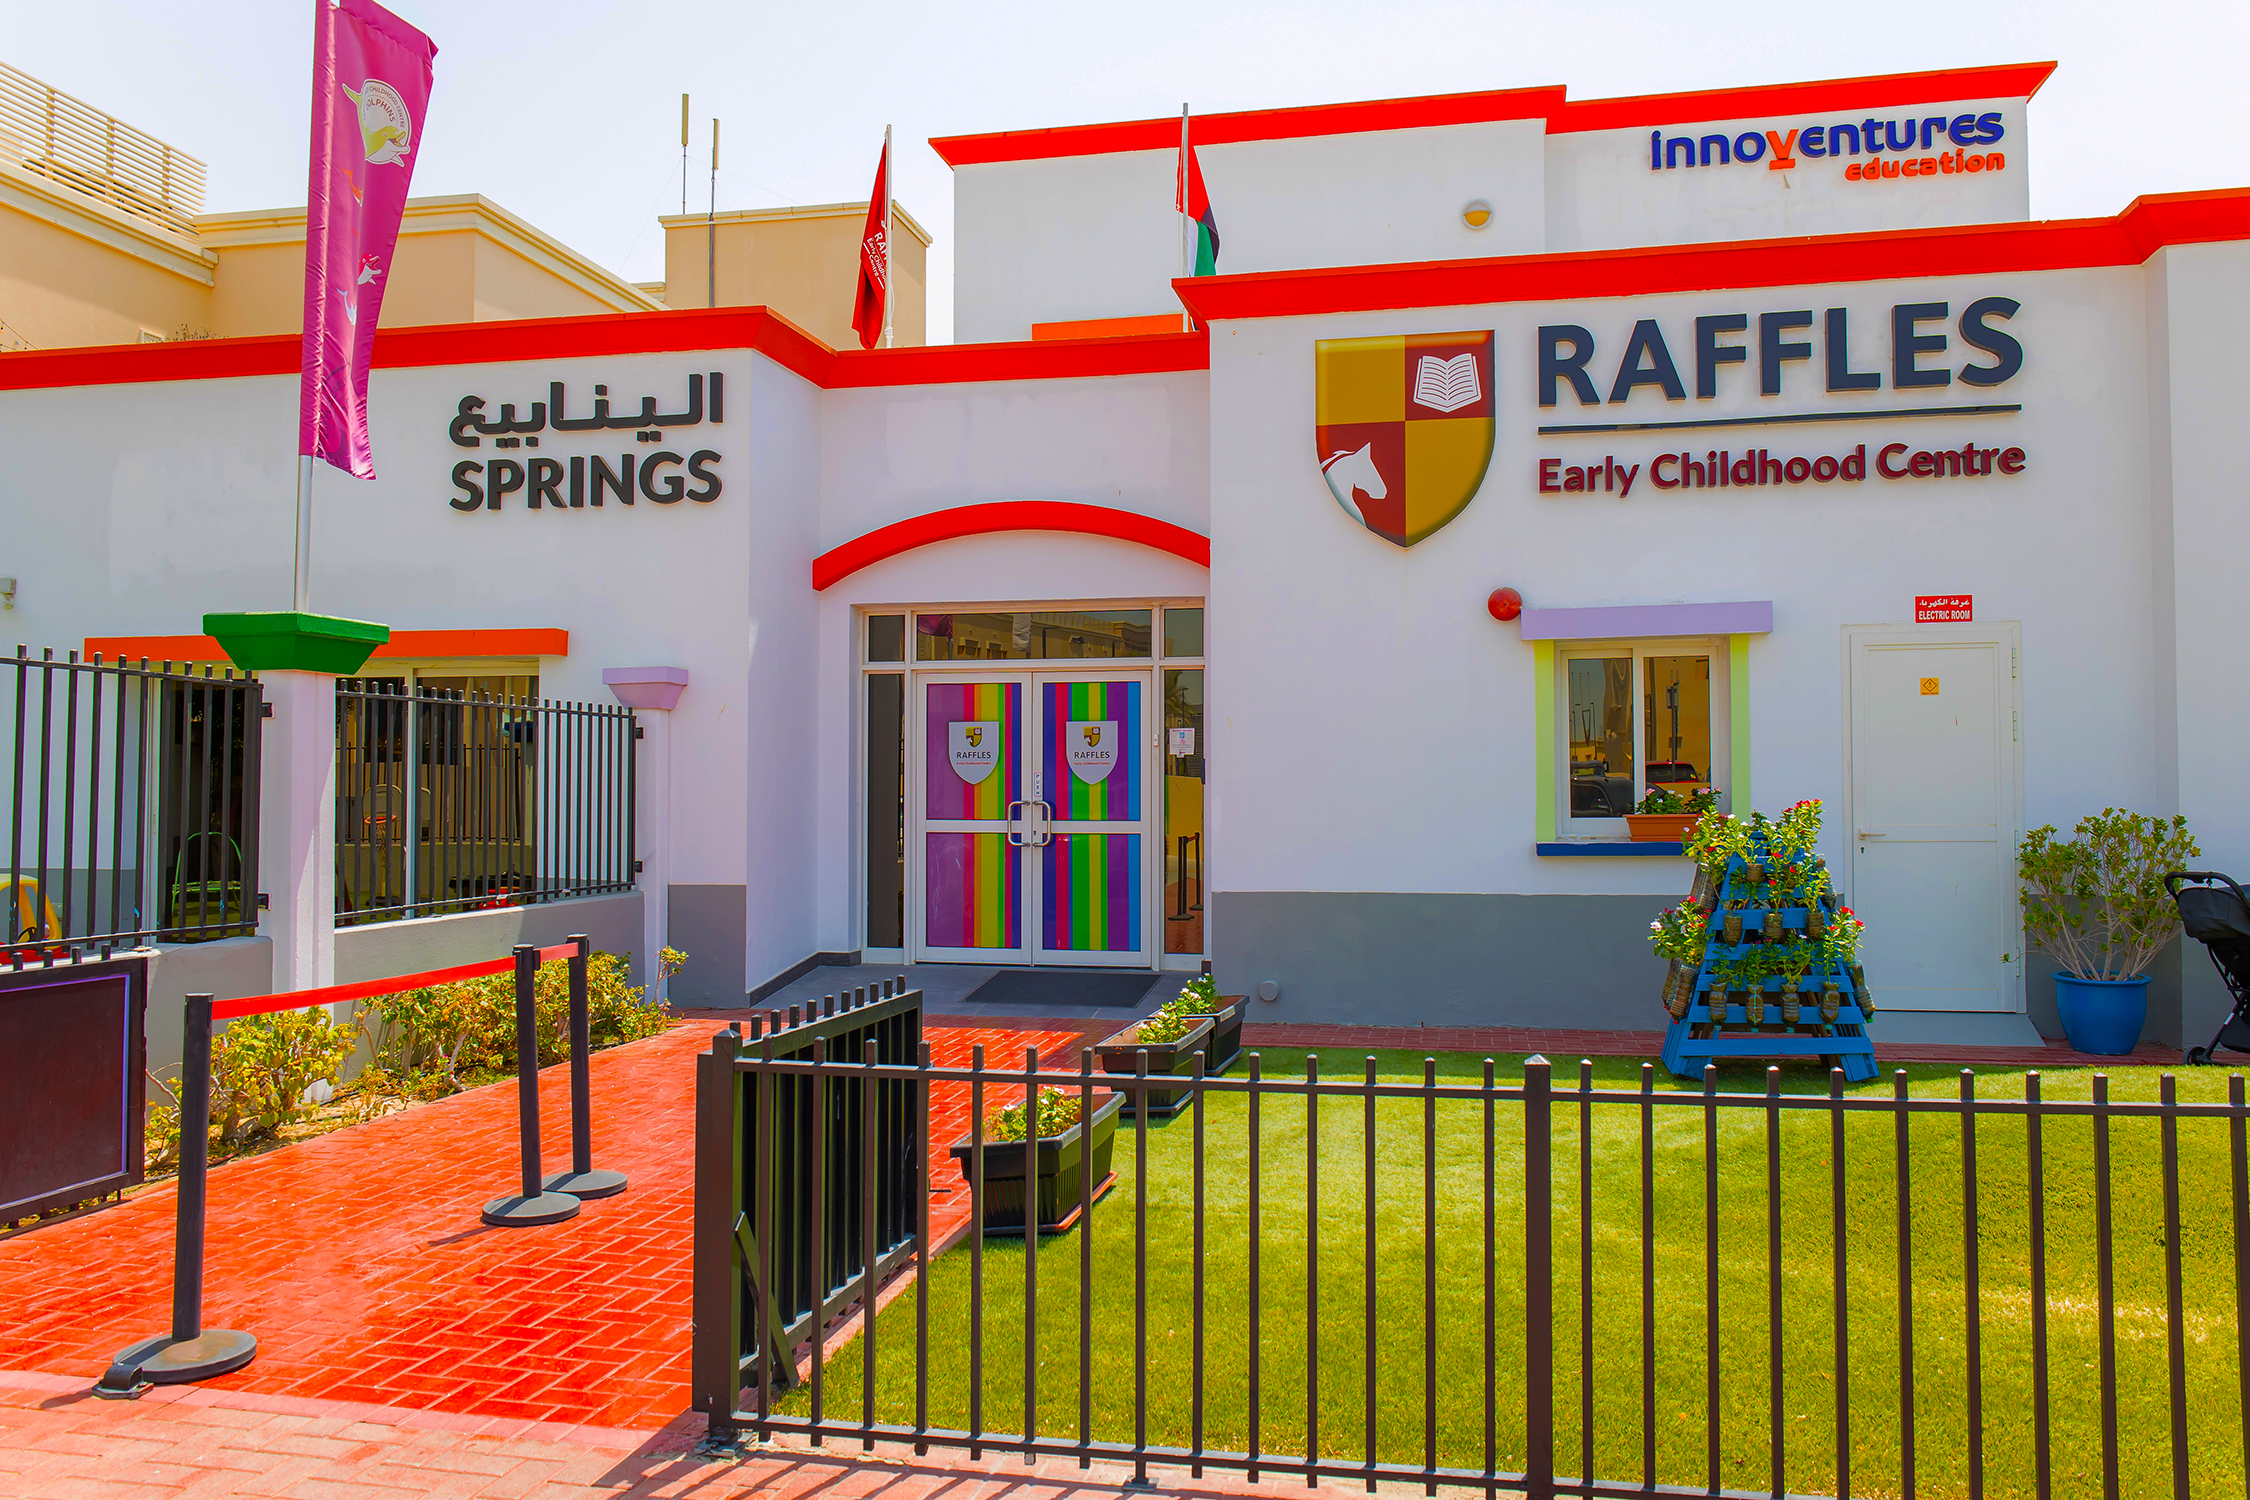 مراجعة لمركز رافلز للتعليم المبكر في الينابيع دبي - حضانة Innoventures Education المبنية على المنهج البريطاني EYFS